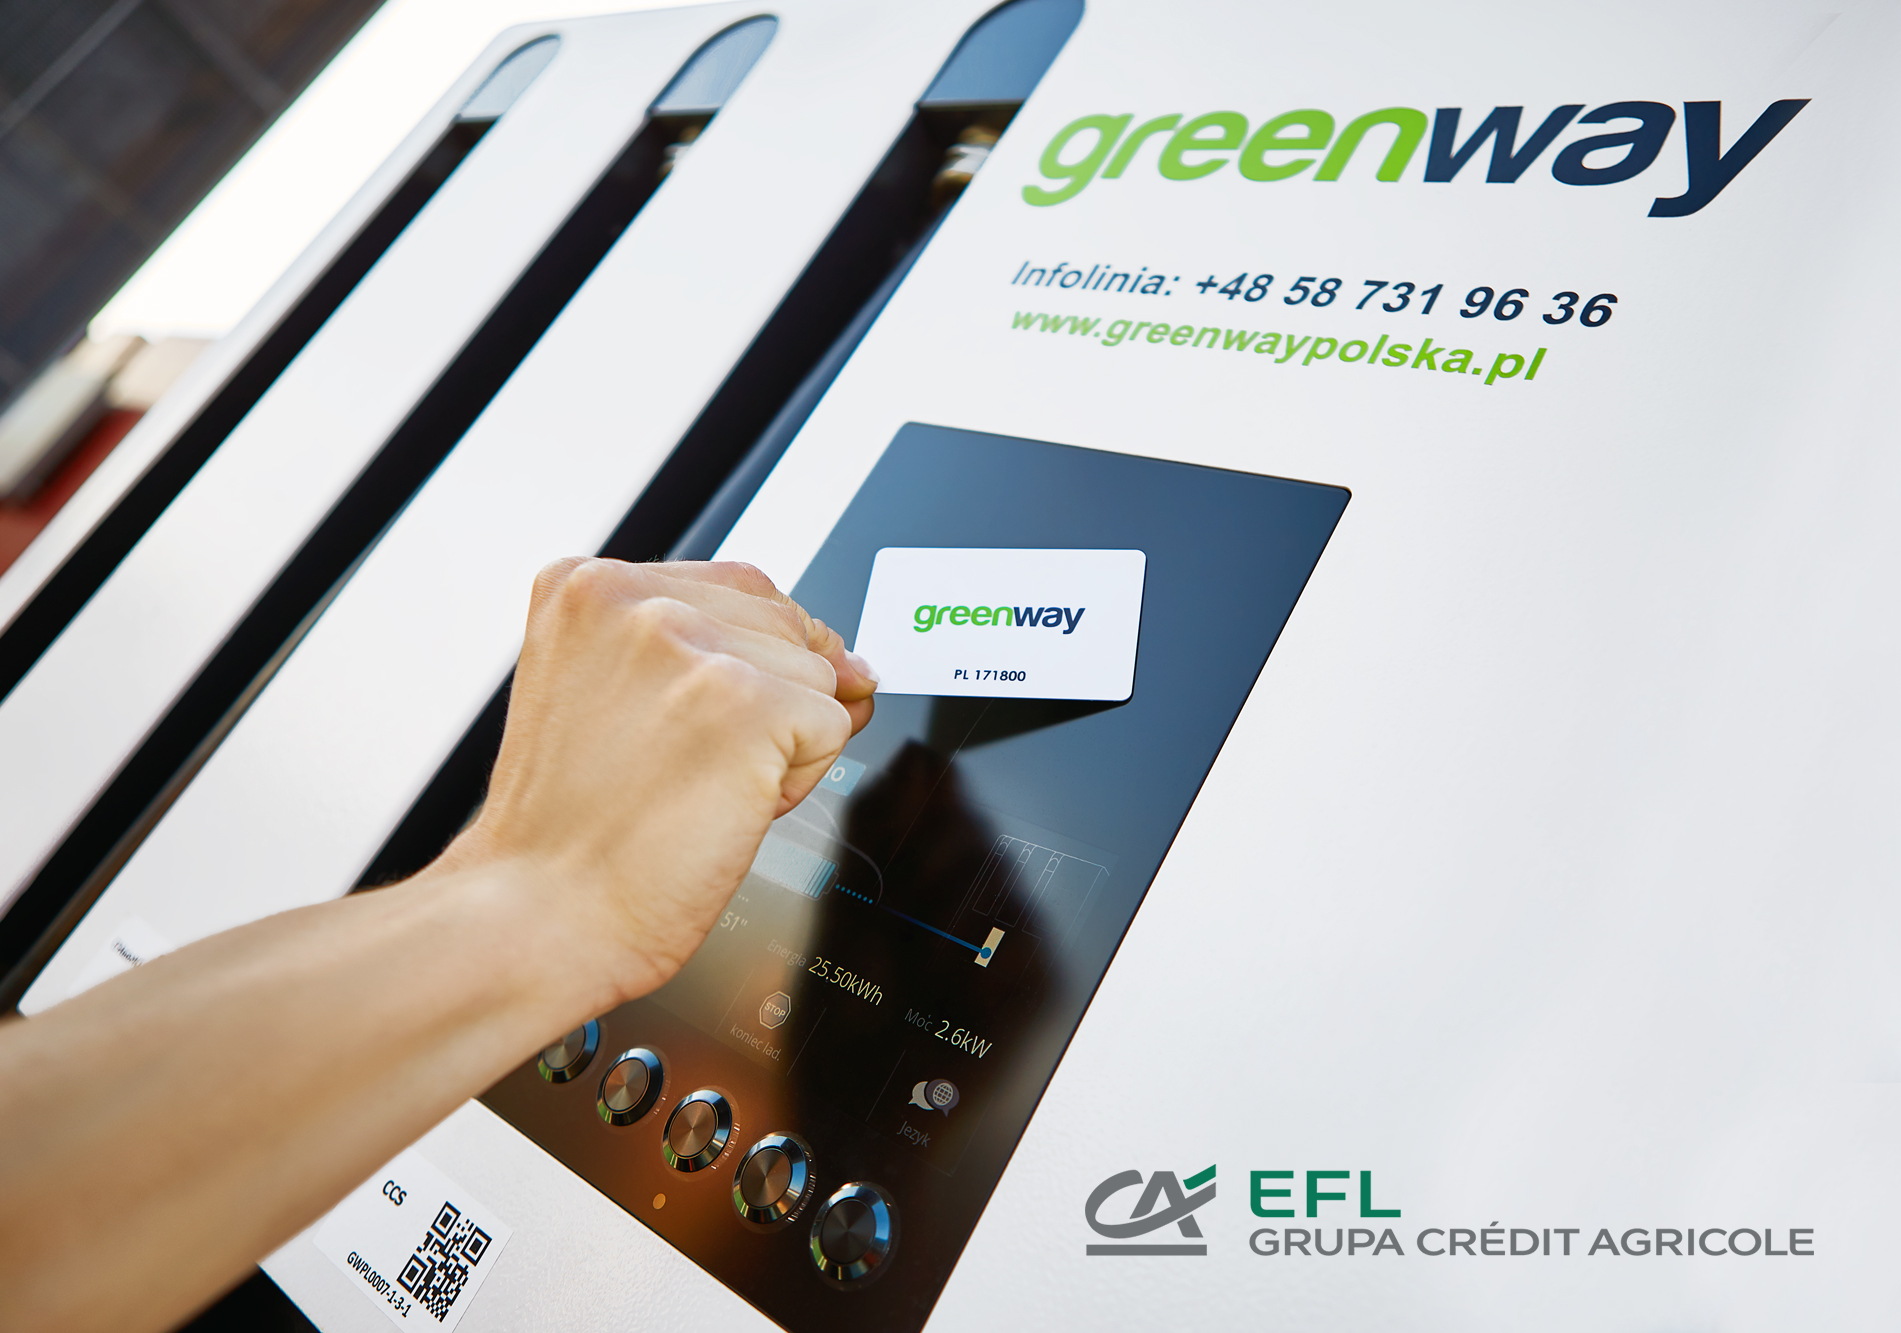 Ładowarki GreenWay Polska w leasingu EFL